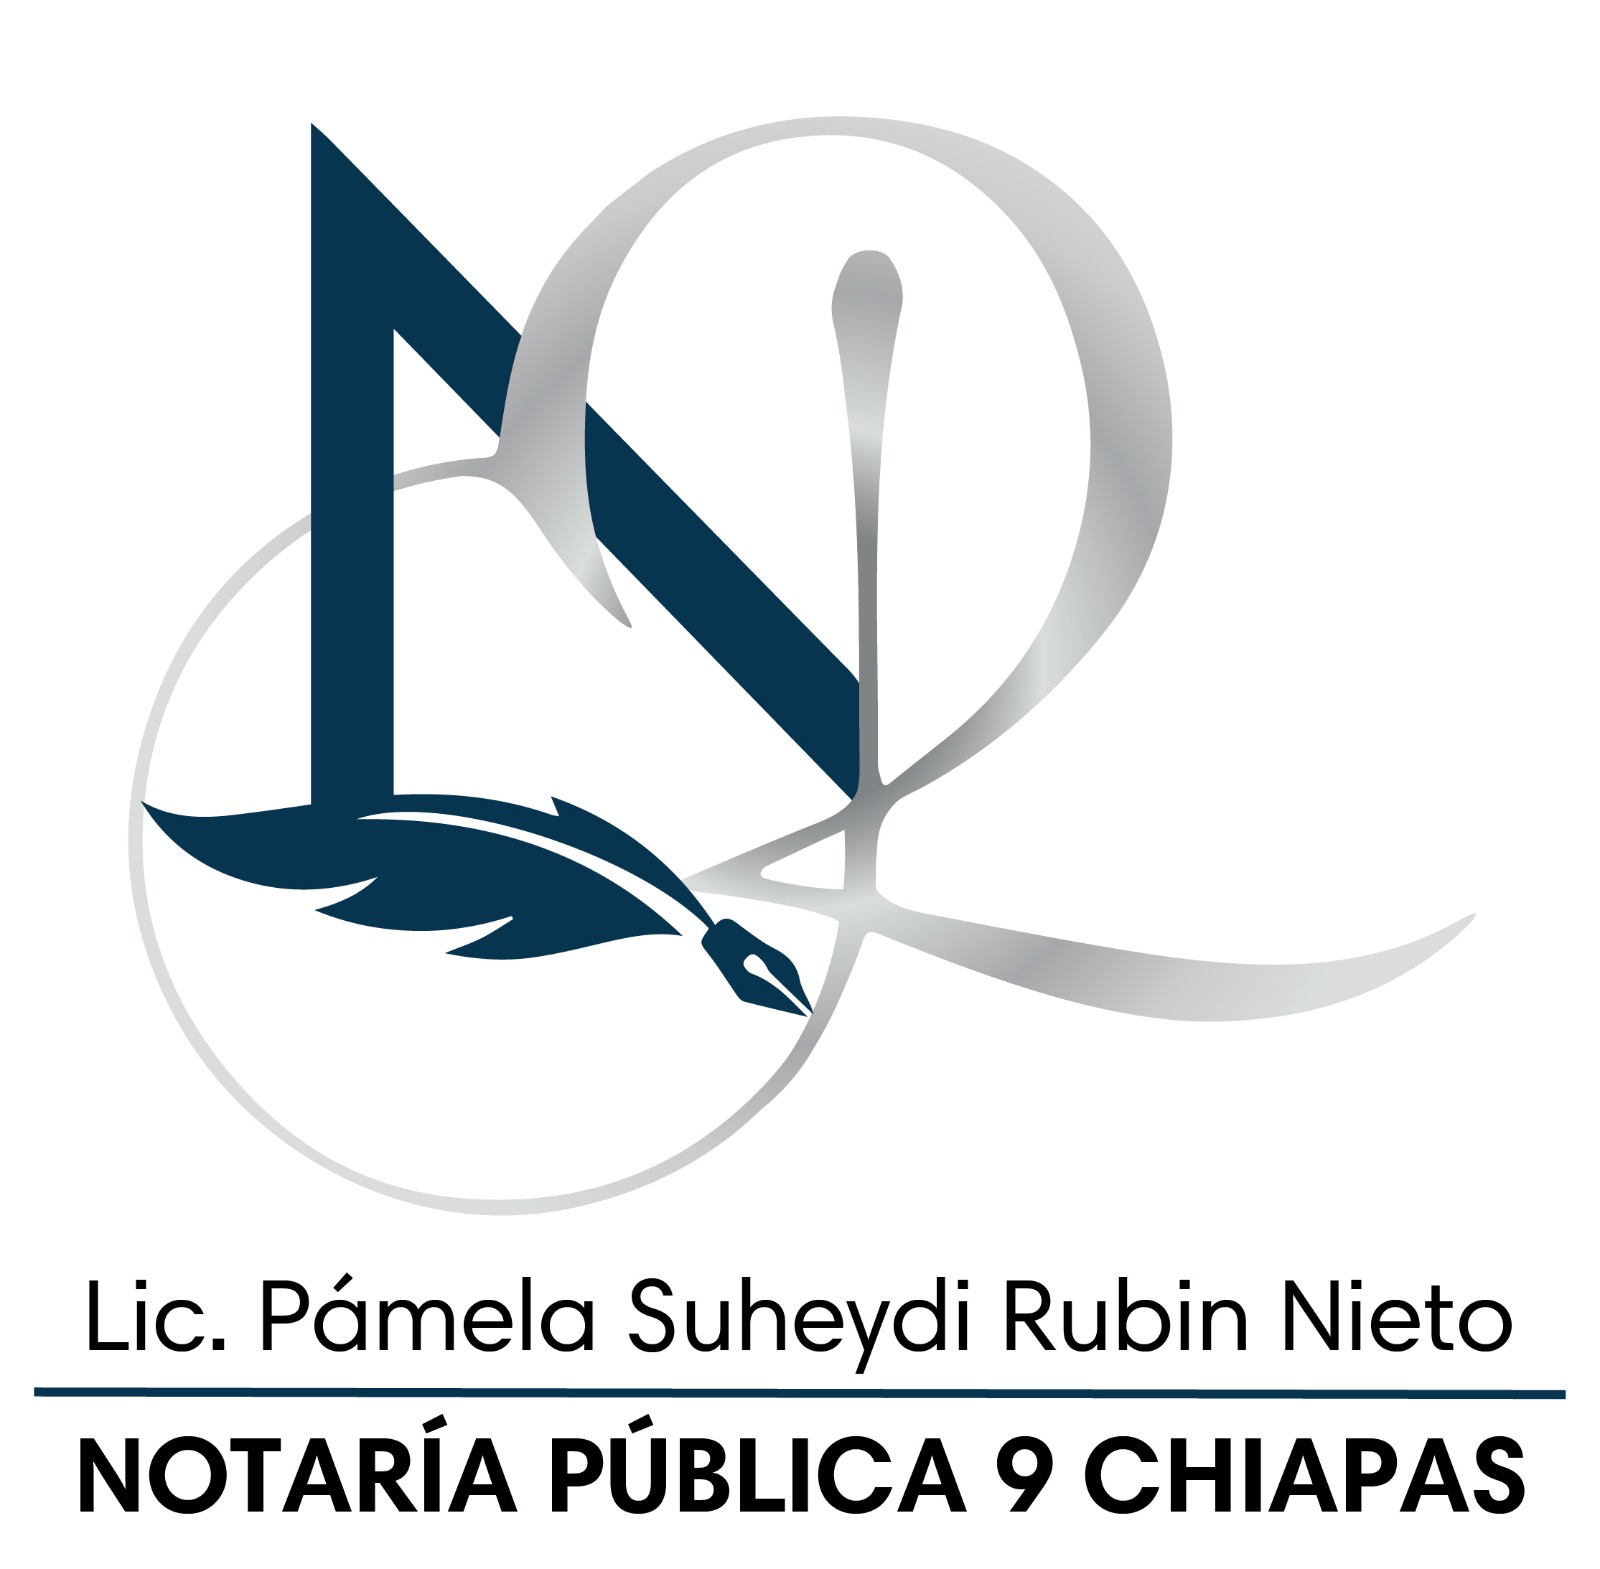 Notaria 9 Chiapas  .:. Sitio en Mantenimiento